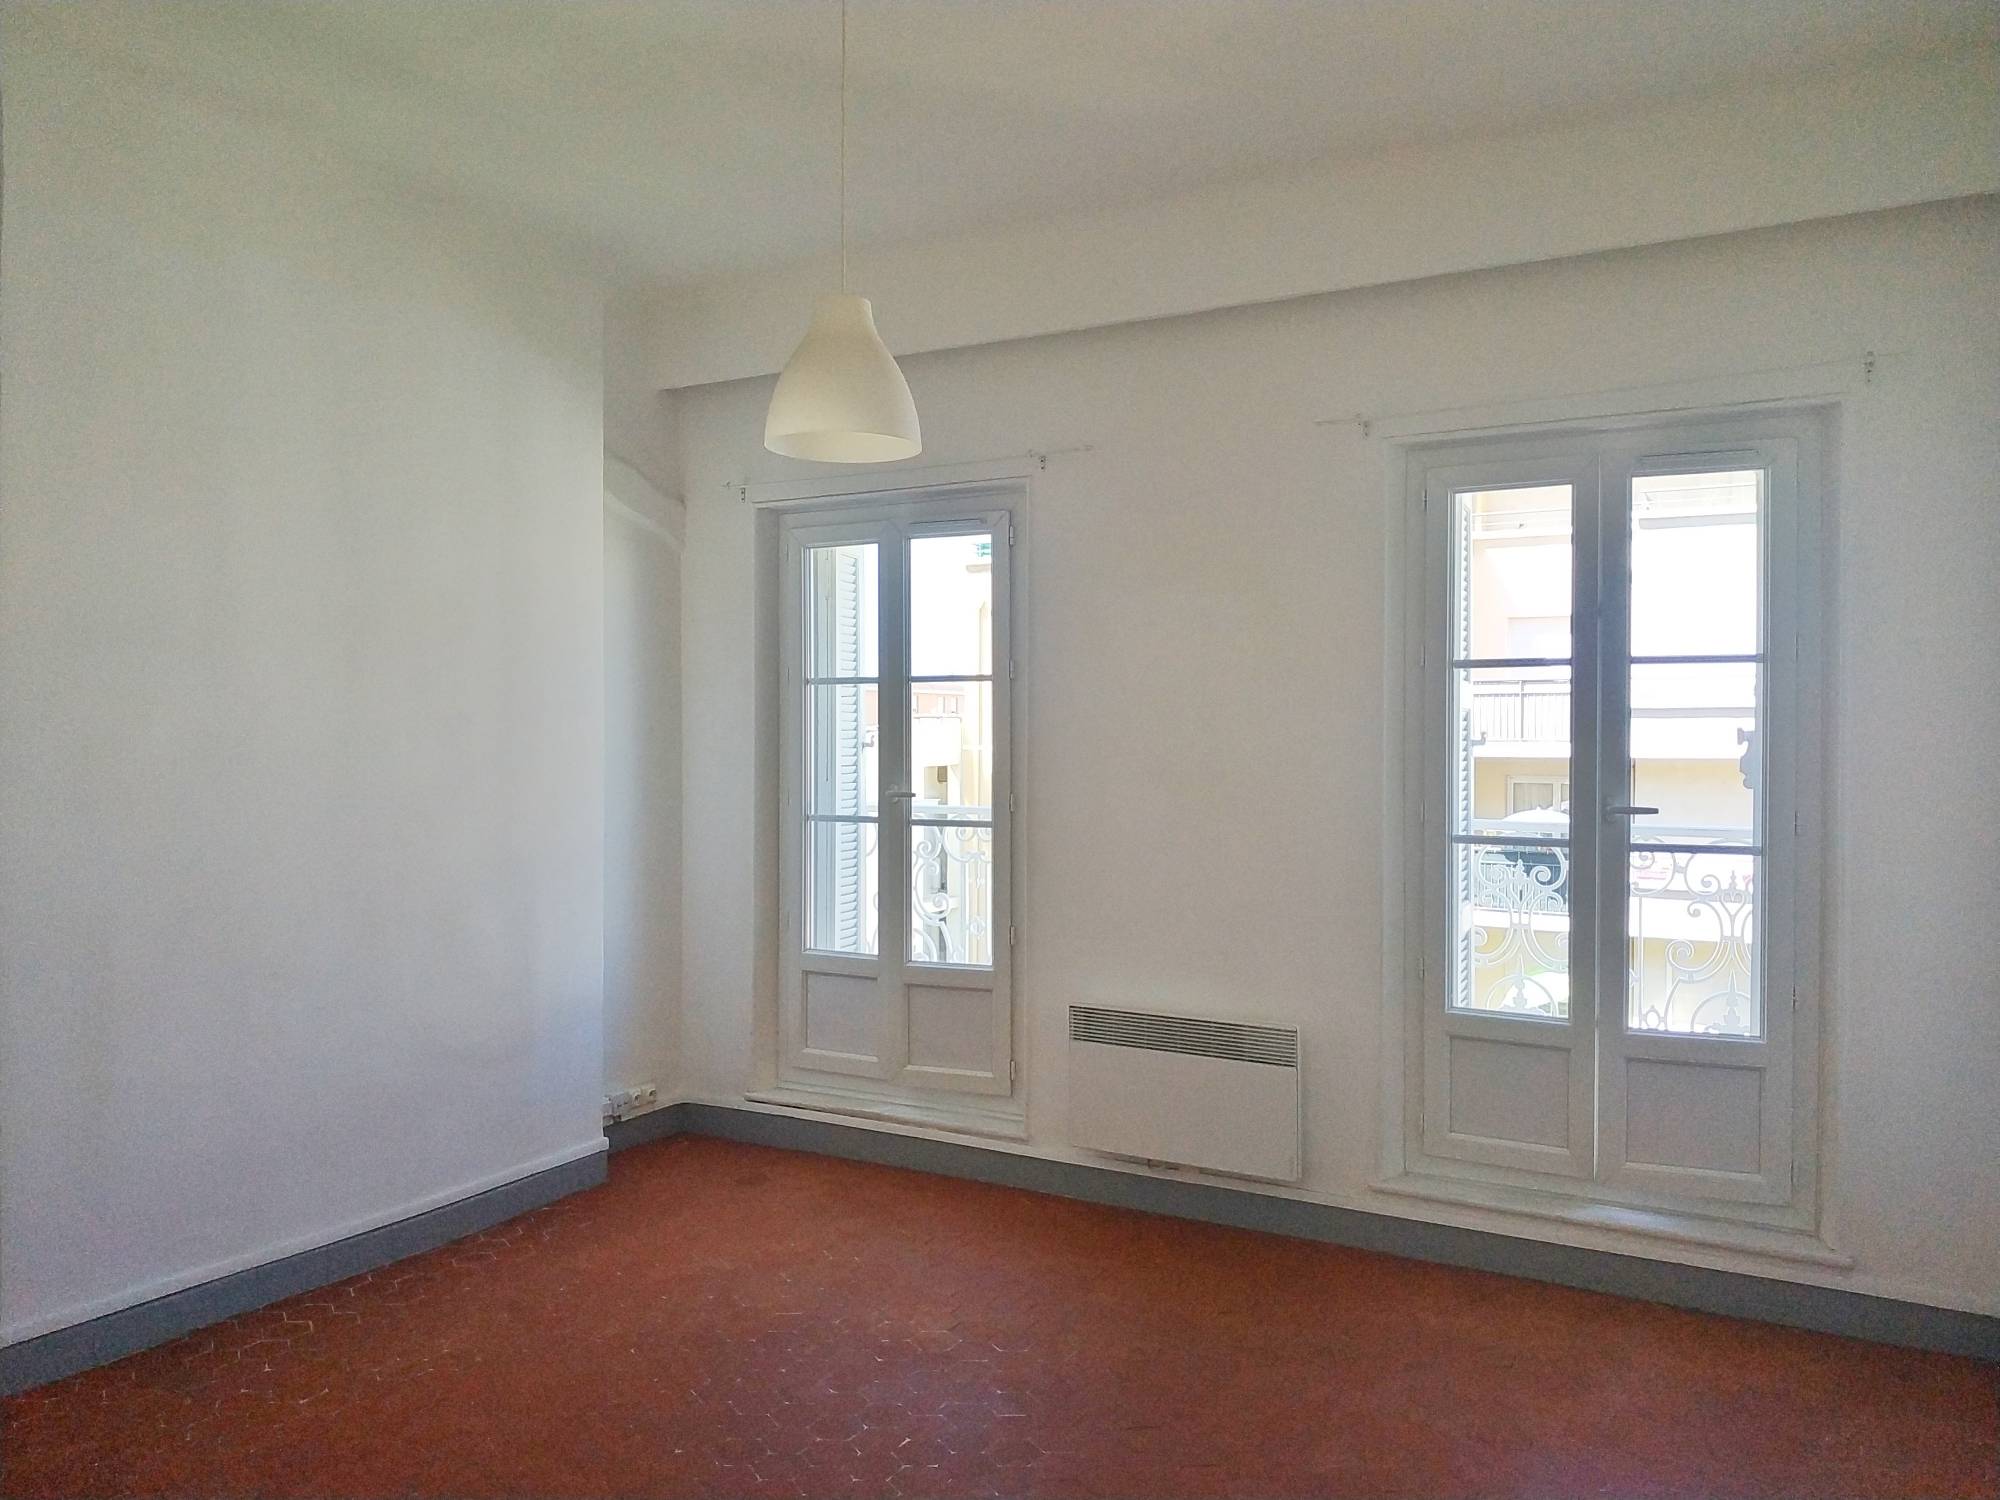 A vendre appartement 2 pièces de 42 m² rénové quartier Joliette 13002 Marseille 